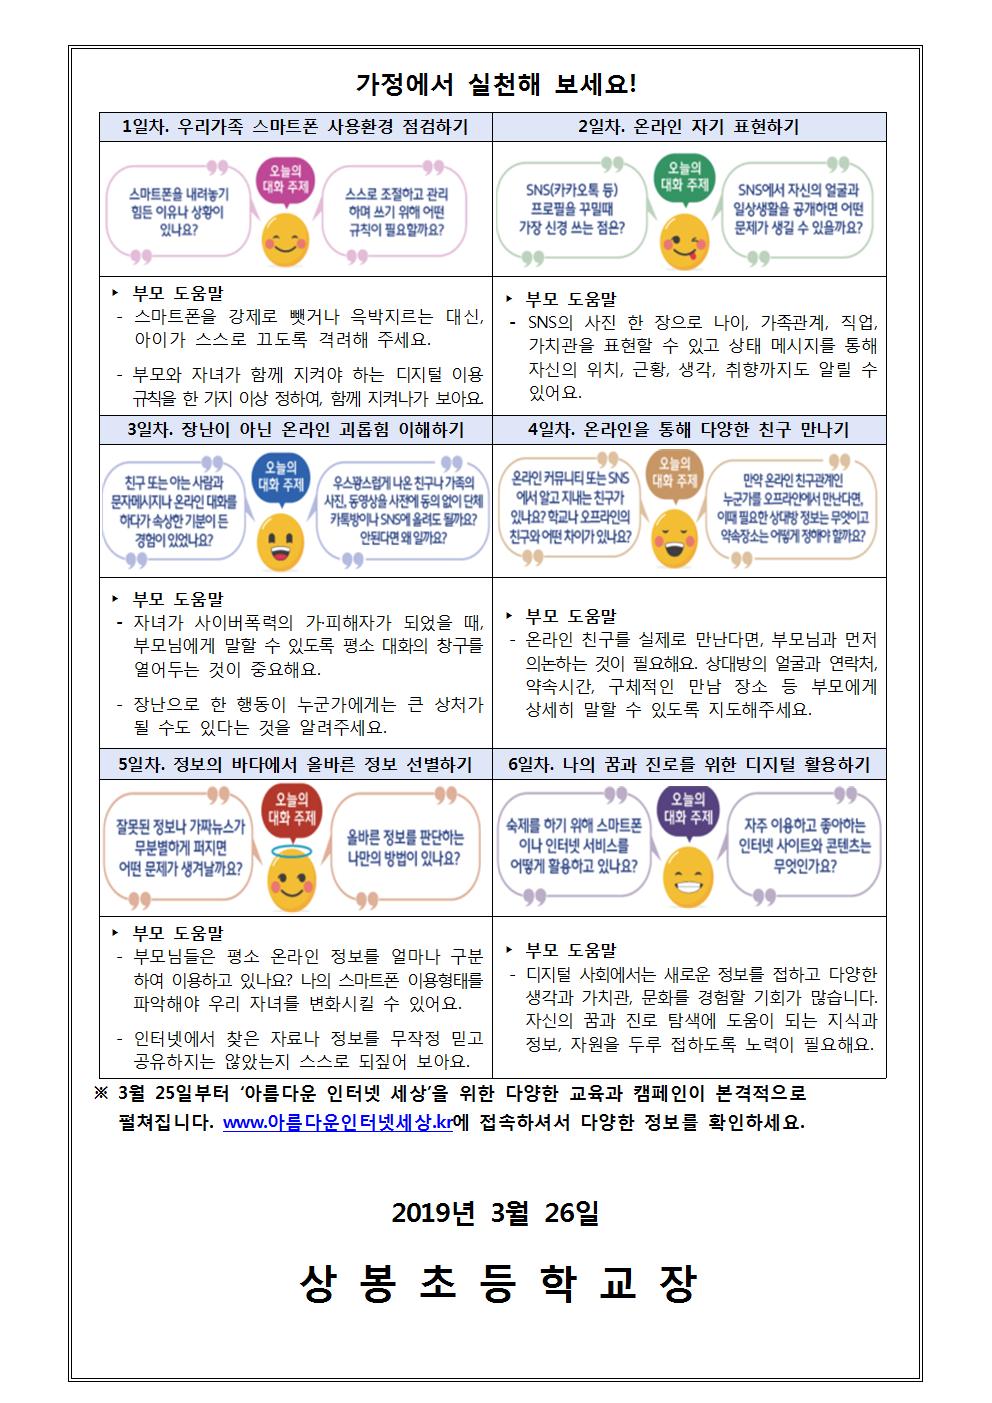 2019. 정보통신윤리-사이버폭력예방 가정통신문002